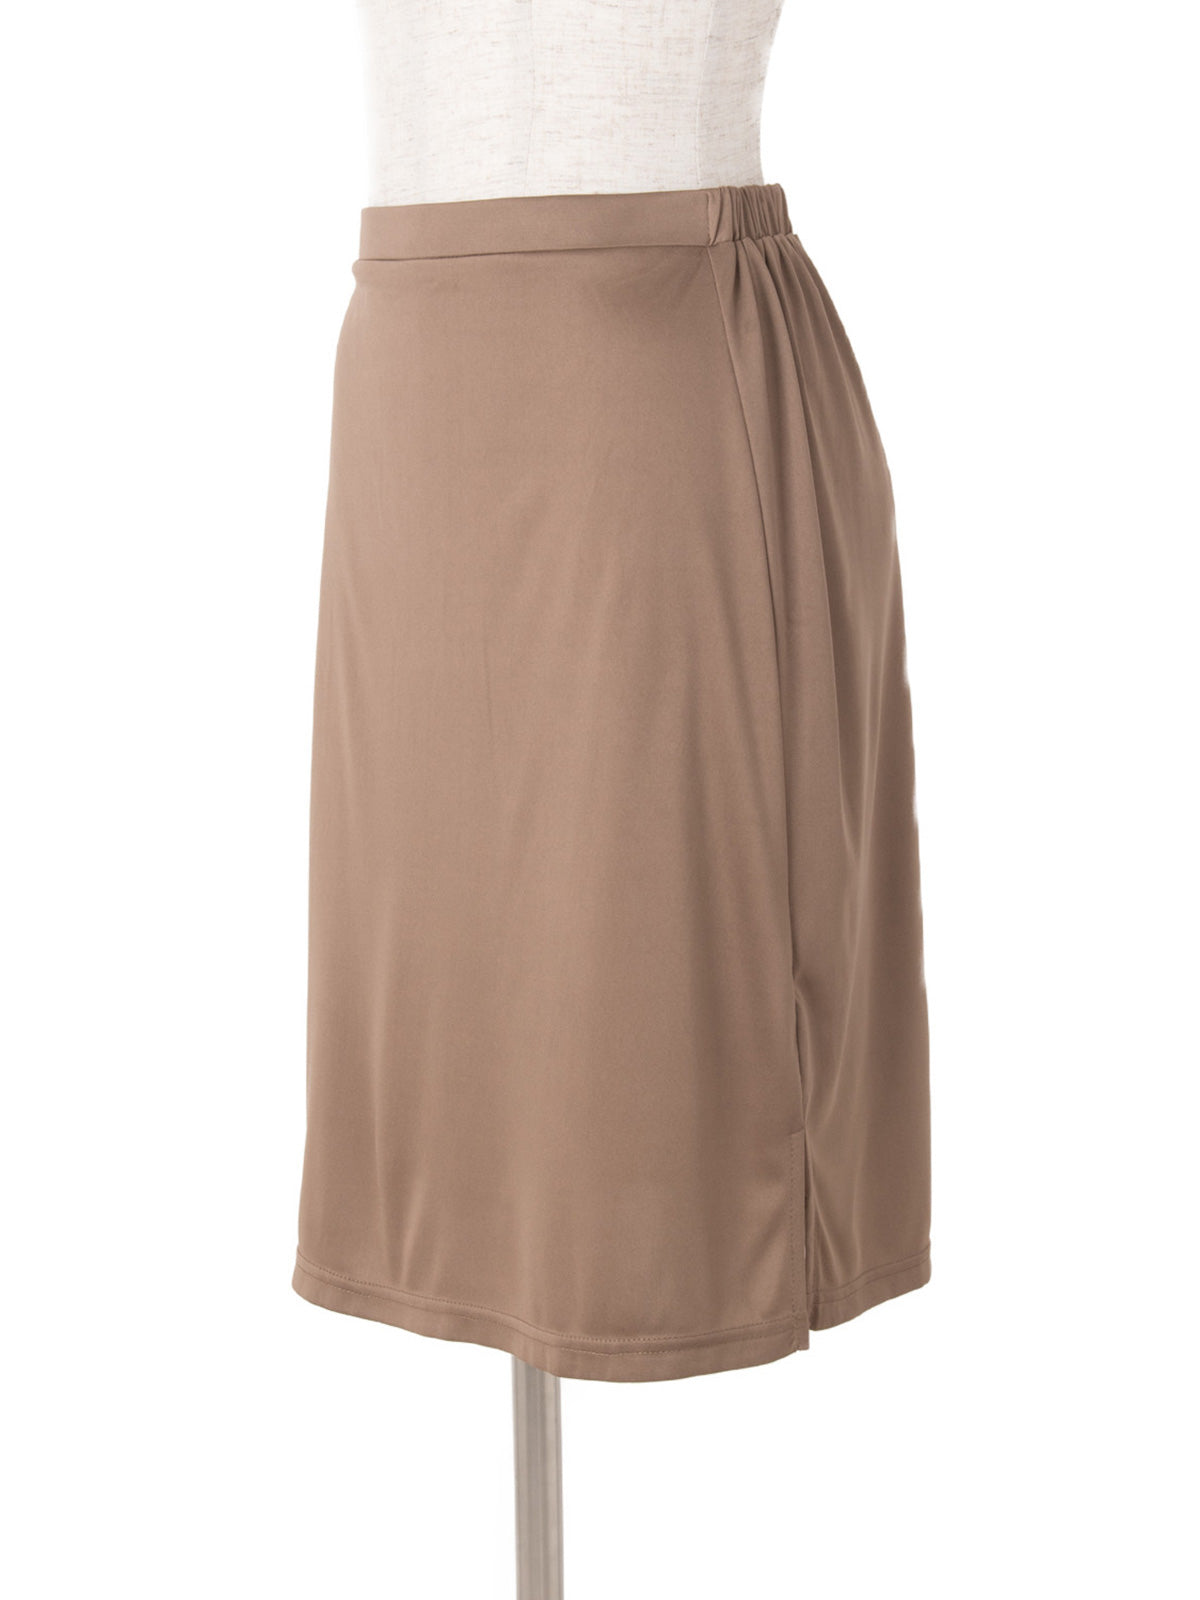 ペチコート（スカート型、55cm丈）：ブラウン - overE（オーバーイー）の公式通販サイト